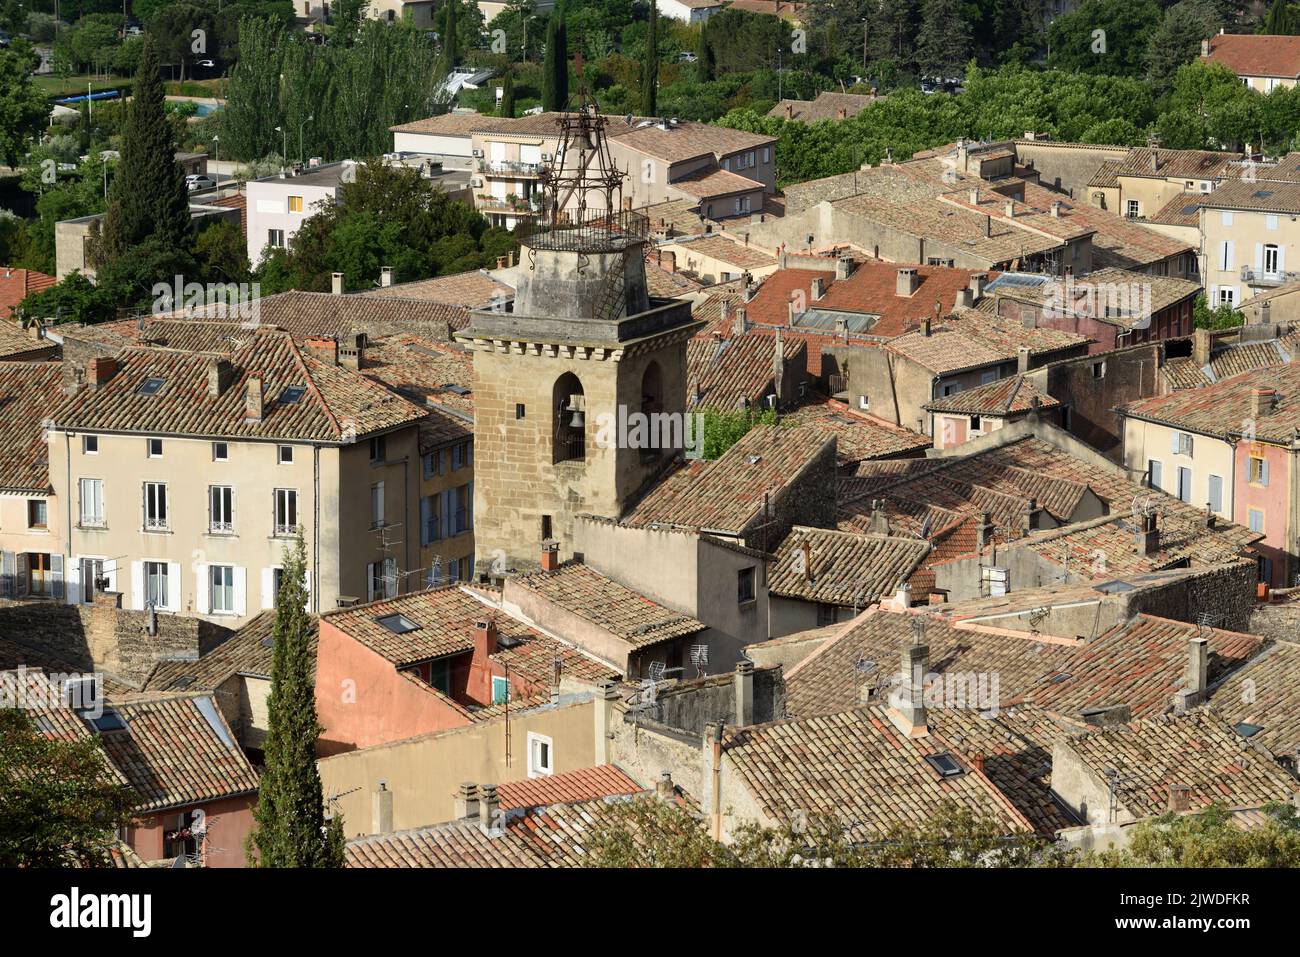 Vue aérienne ou vue à angle élevé sur la vieille ville ou le quartier historique de Nyons avec l'église saint-Vincent C17th Beffroi Nyons Drôme Provence France Banque D'Images